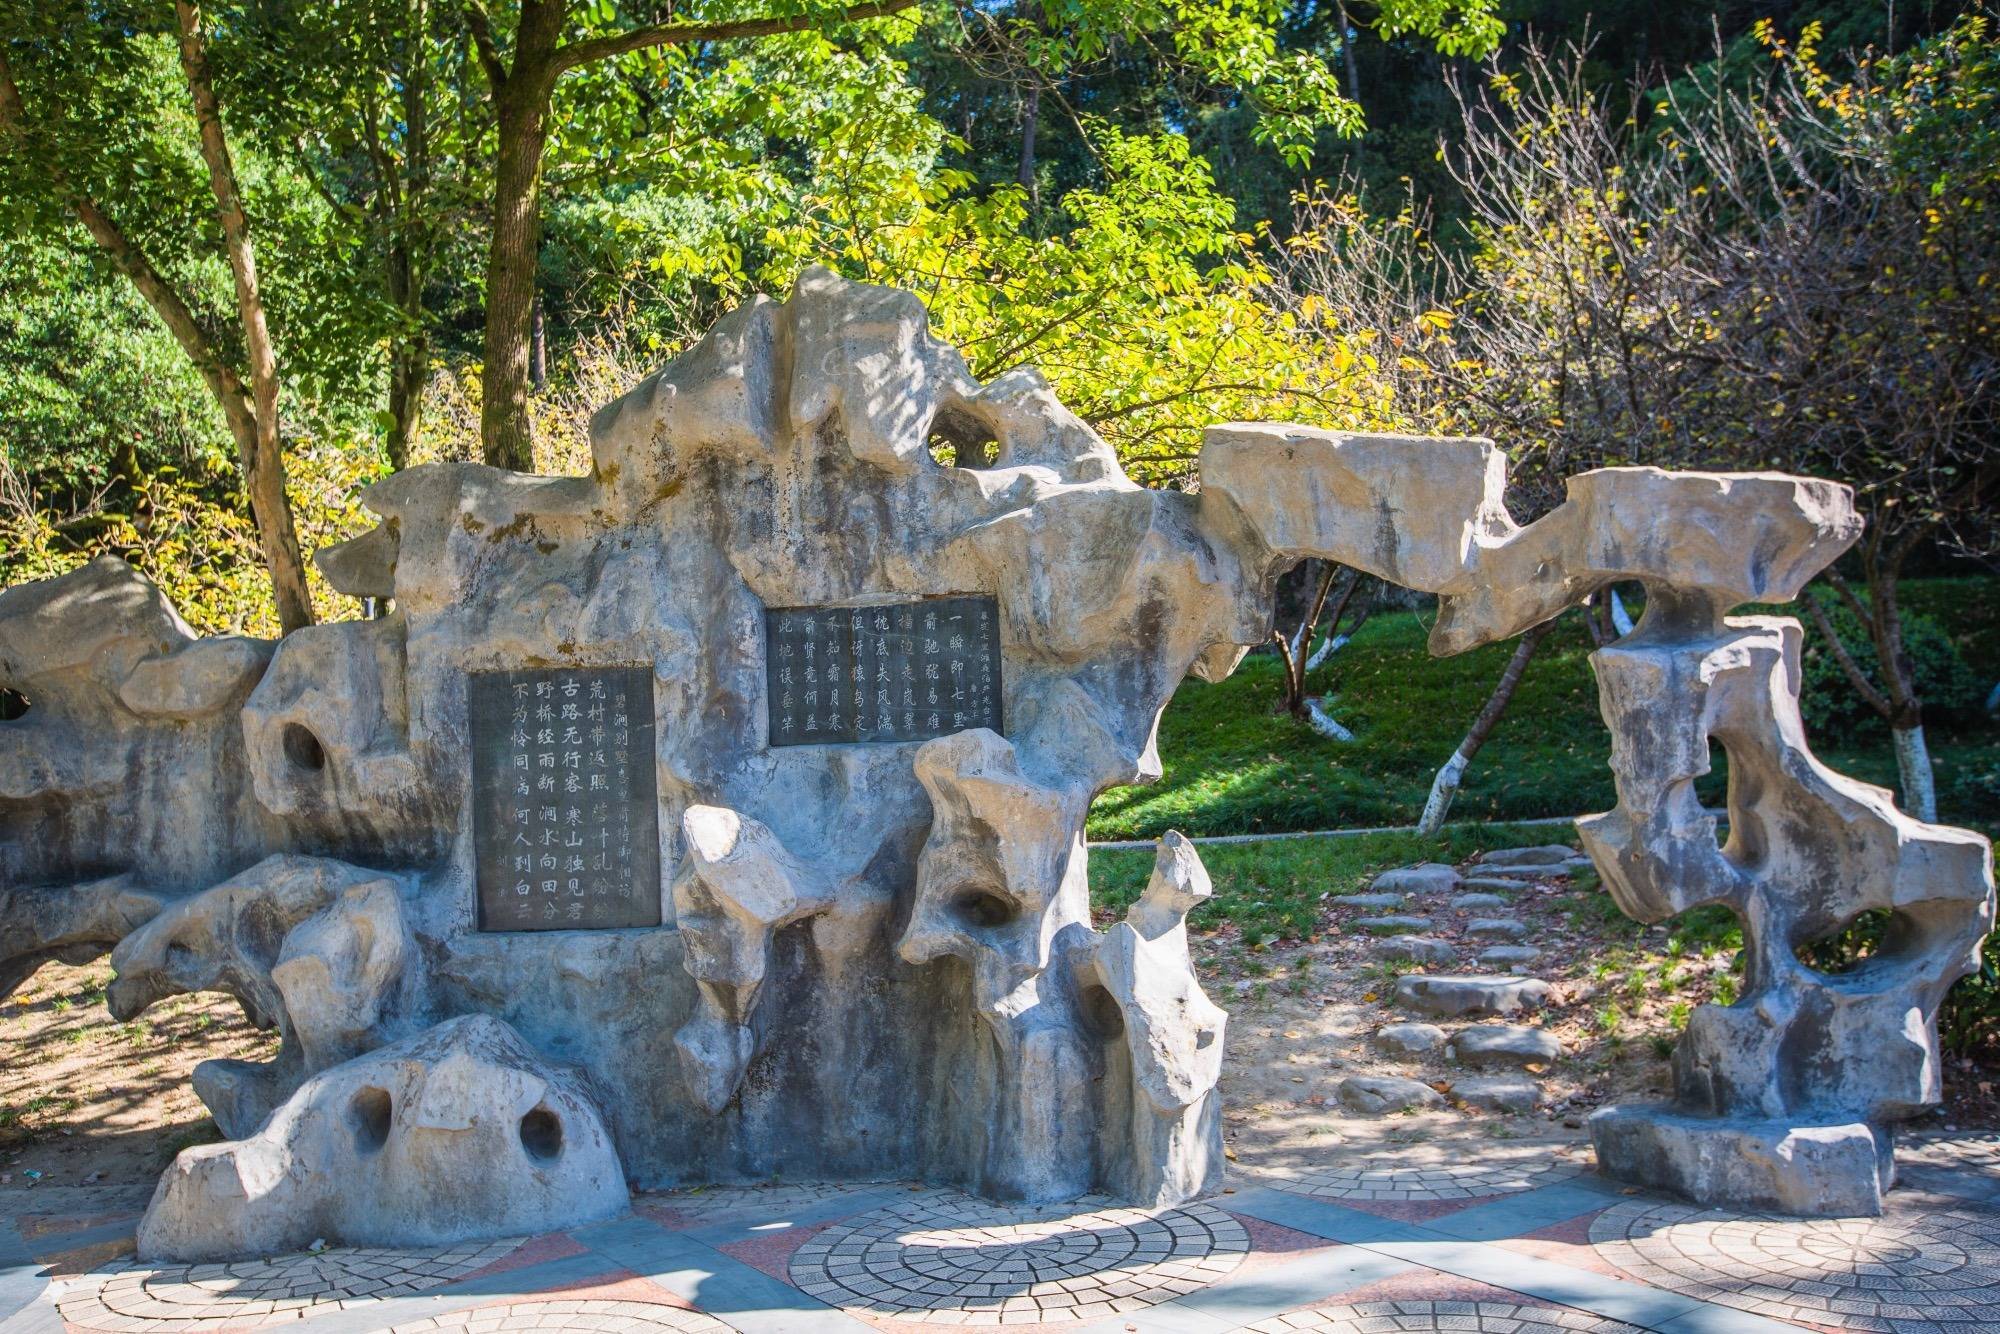 杭州建德有一座白沙公园,环境优美,是市民休闲散心的好去处